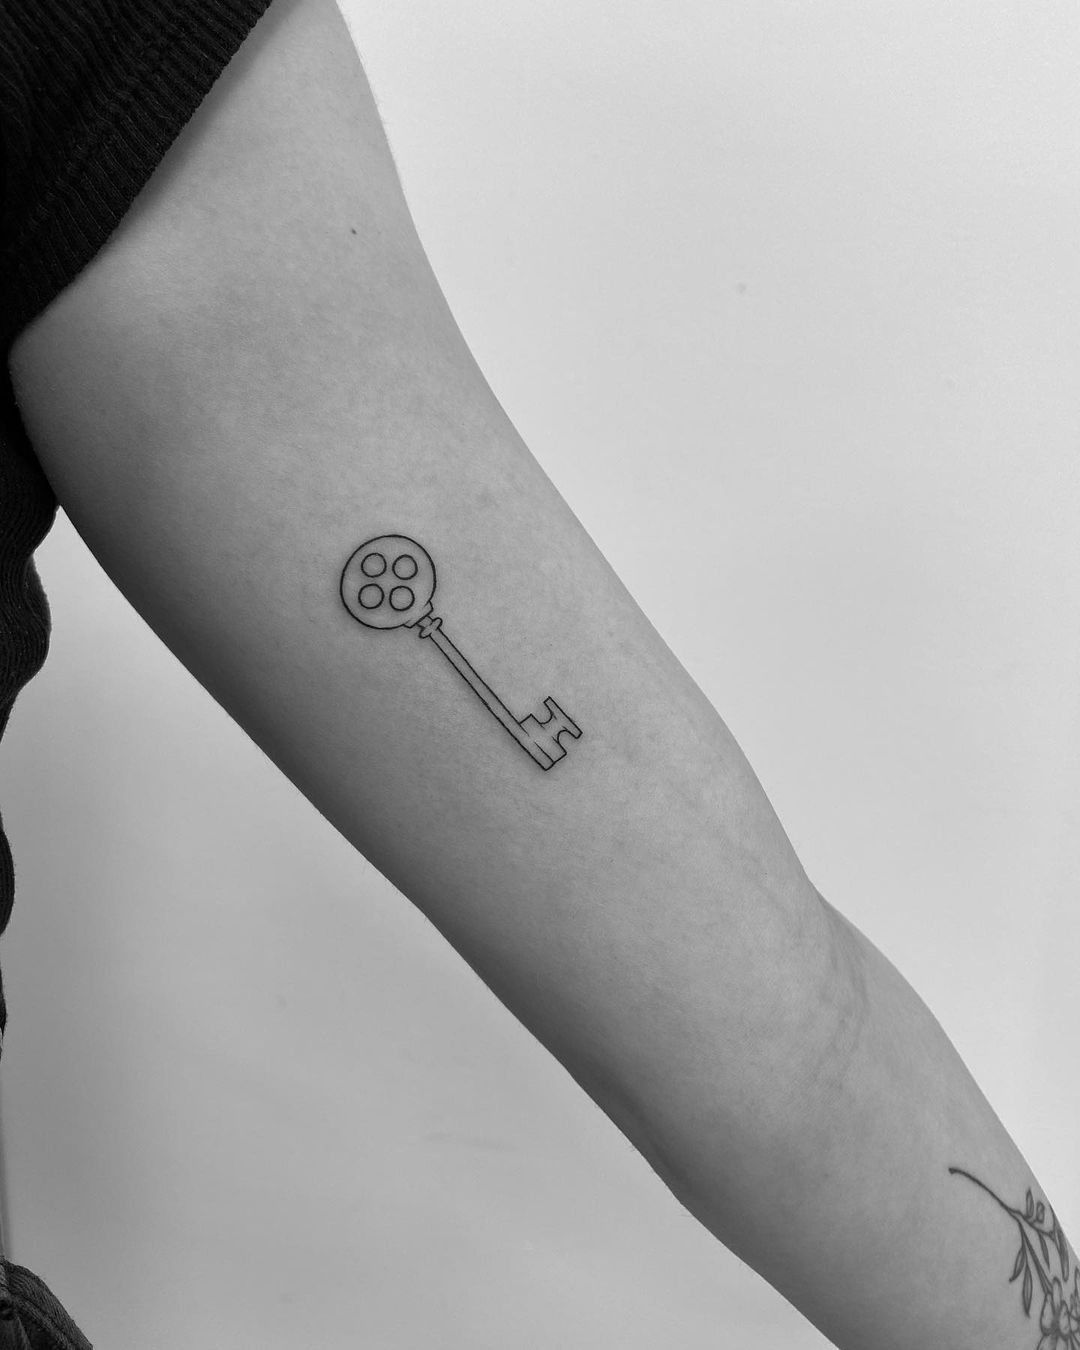 Small Key Tattoo On Wrist - Tattoos Designs